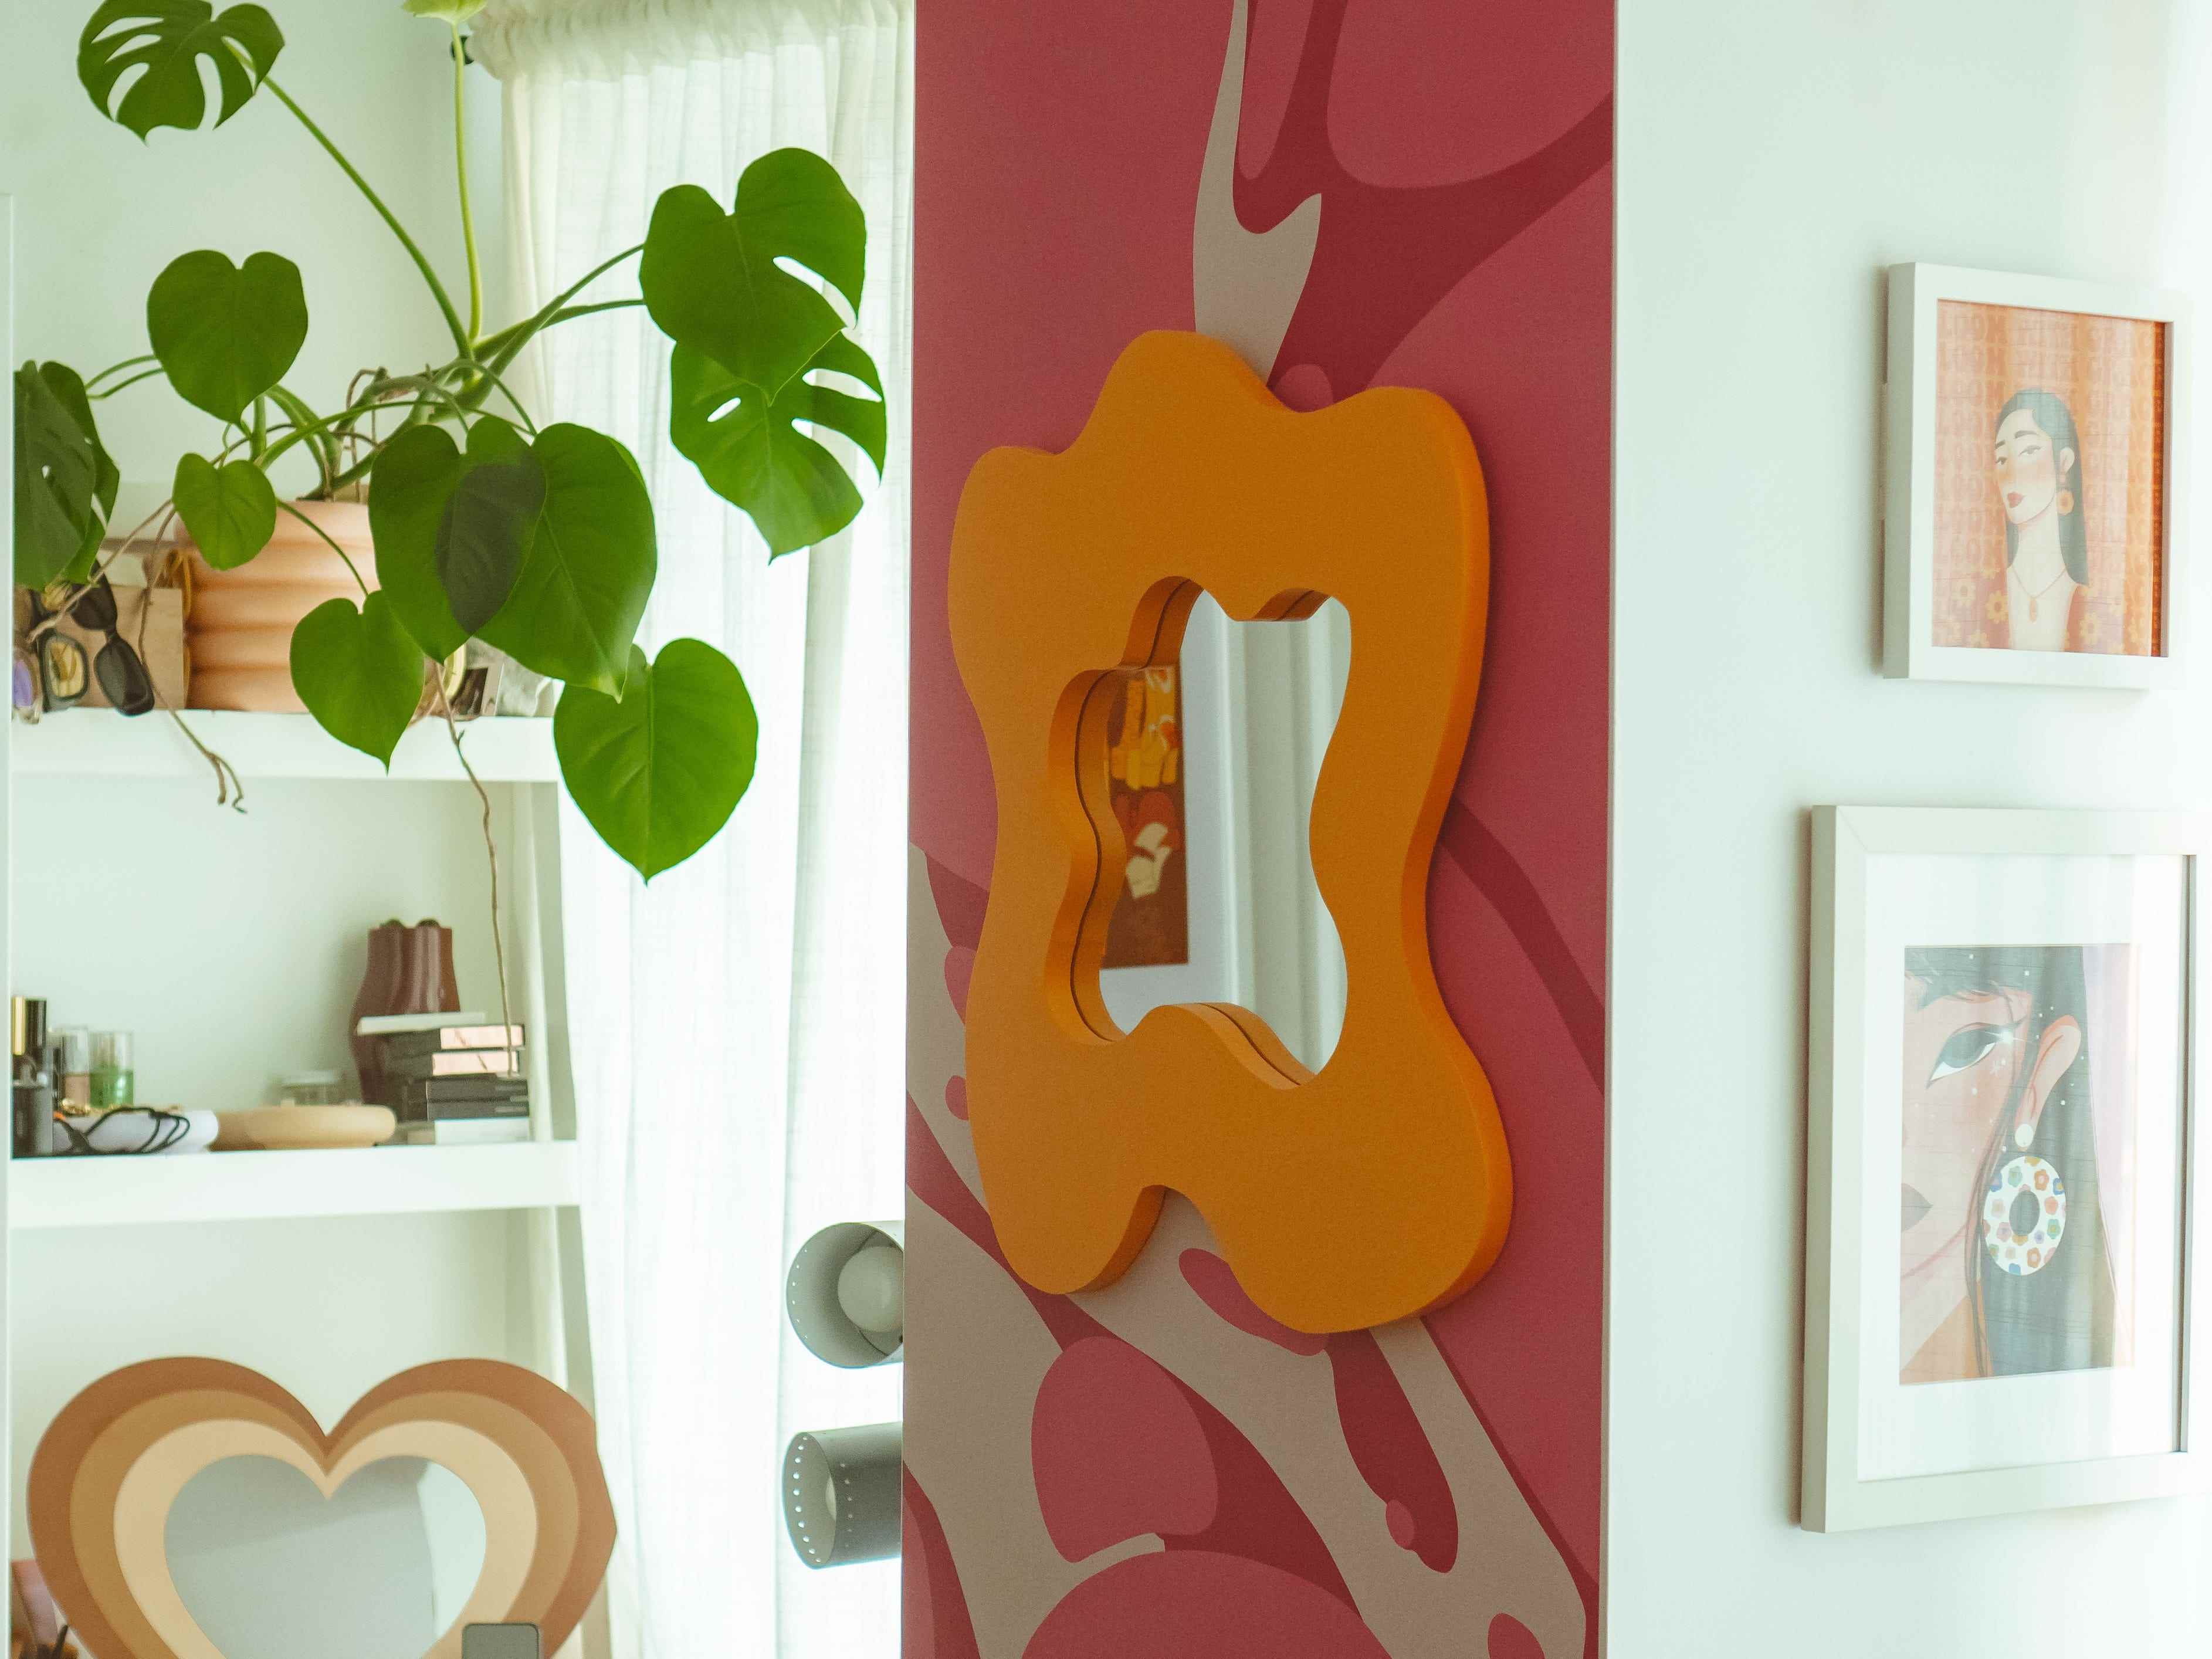 Rosa und rote abstrakte Tapete an einer Wand mit einem groovigen orangefarbenen Spiegel darauf